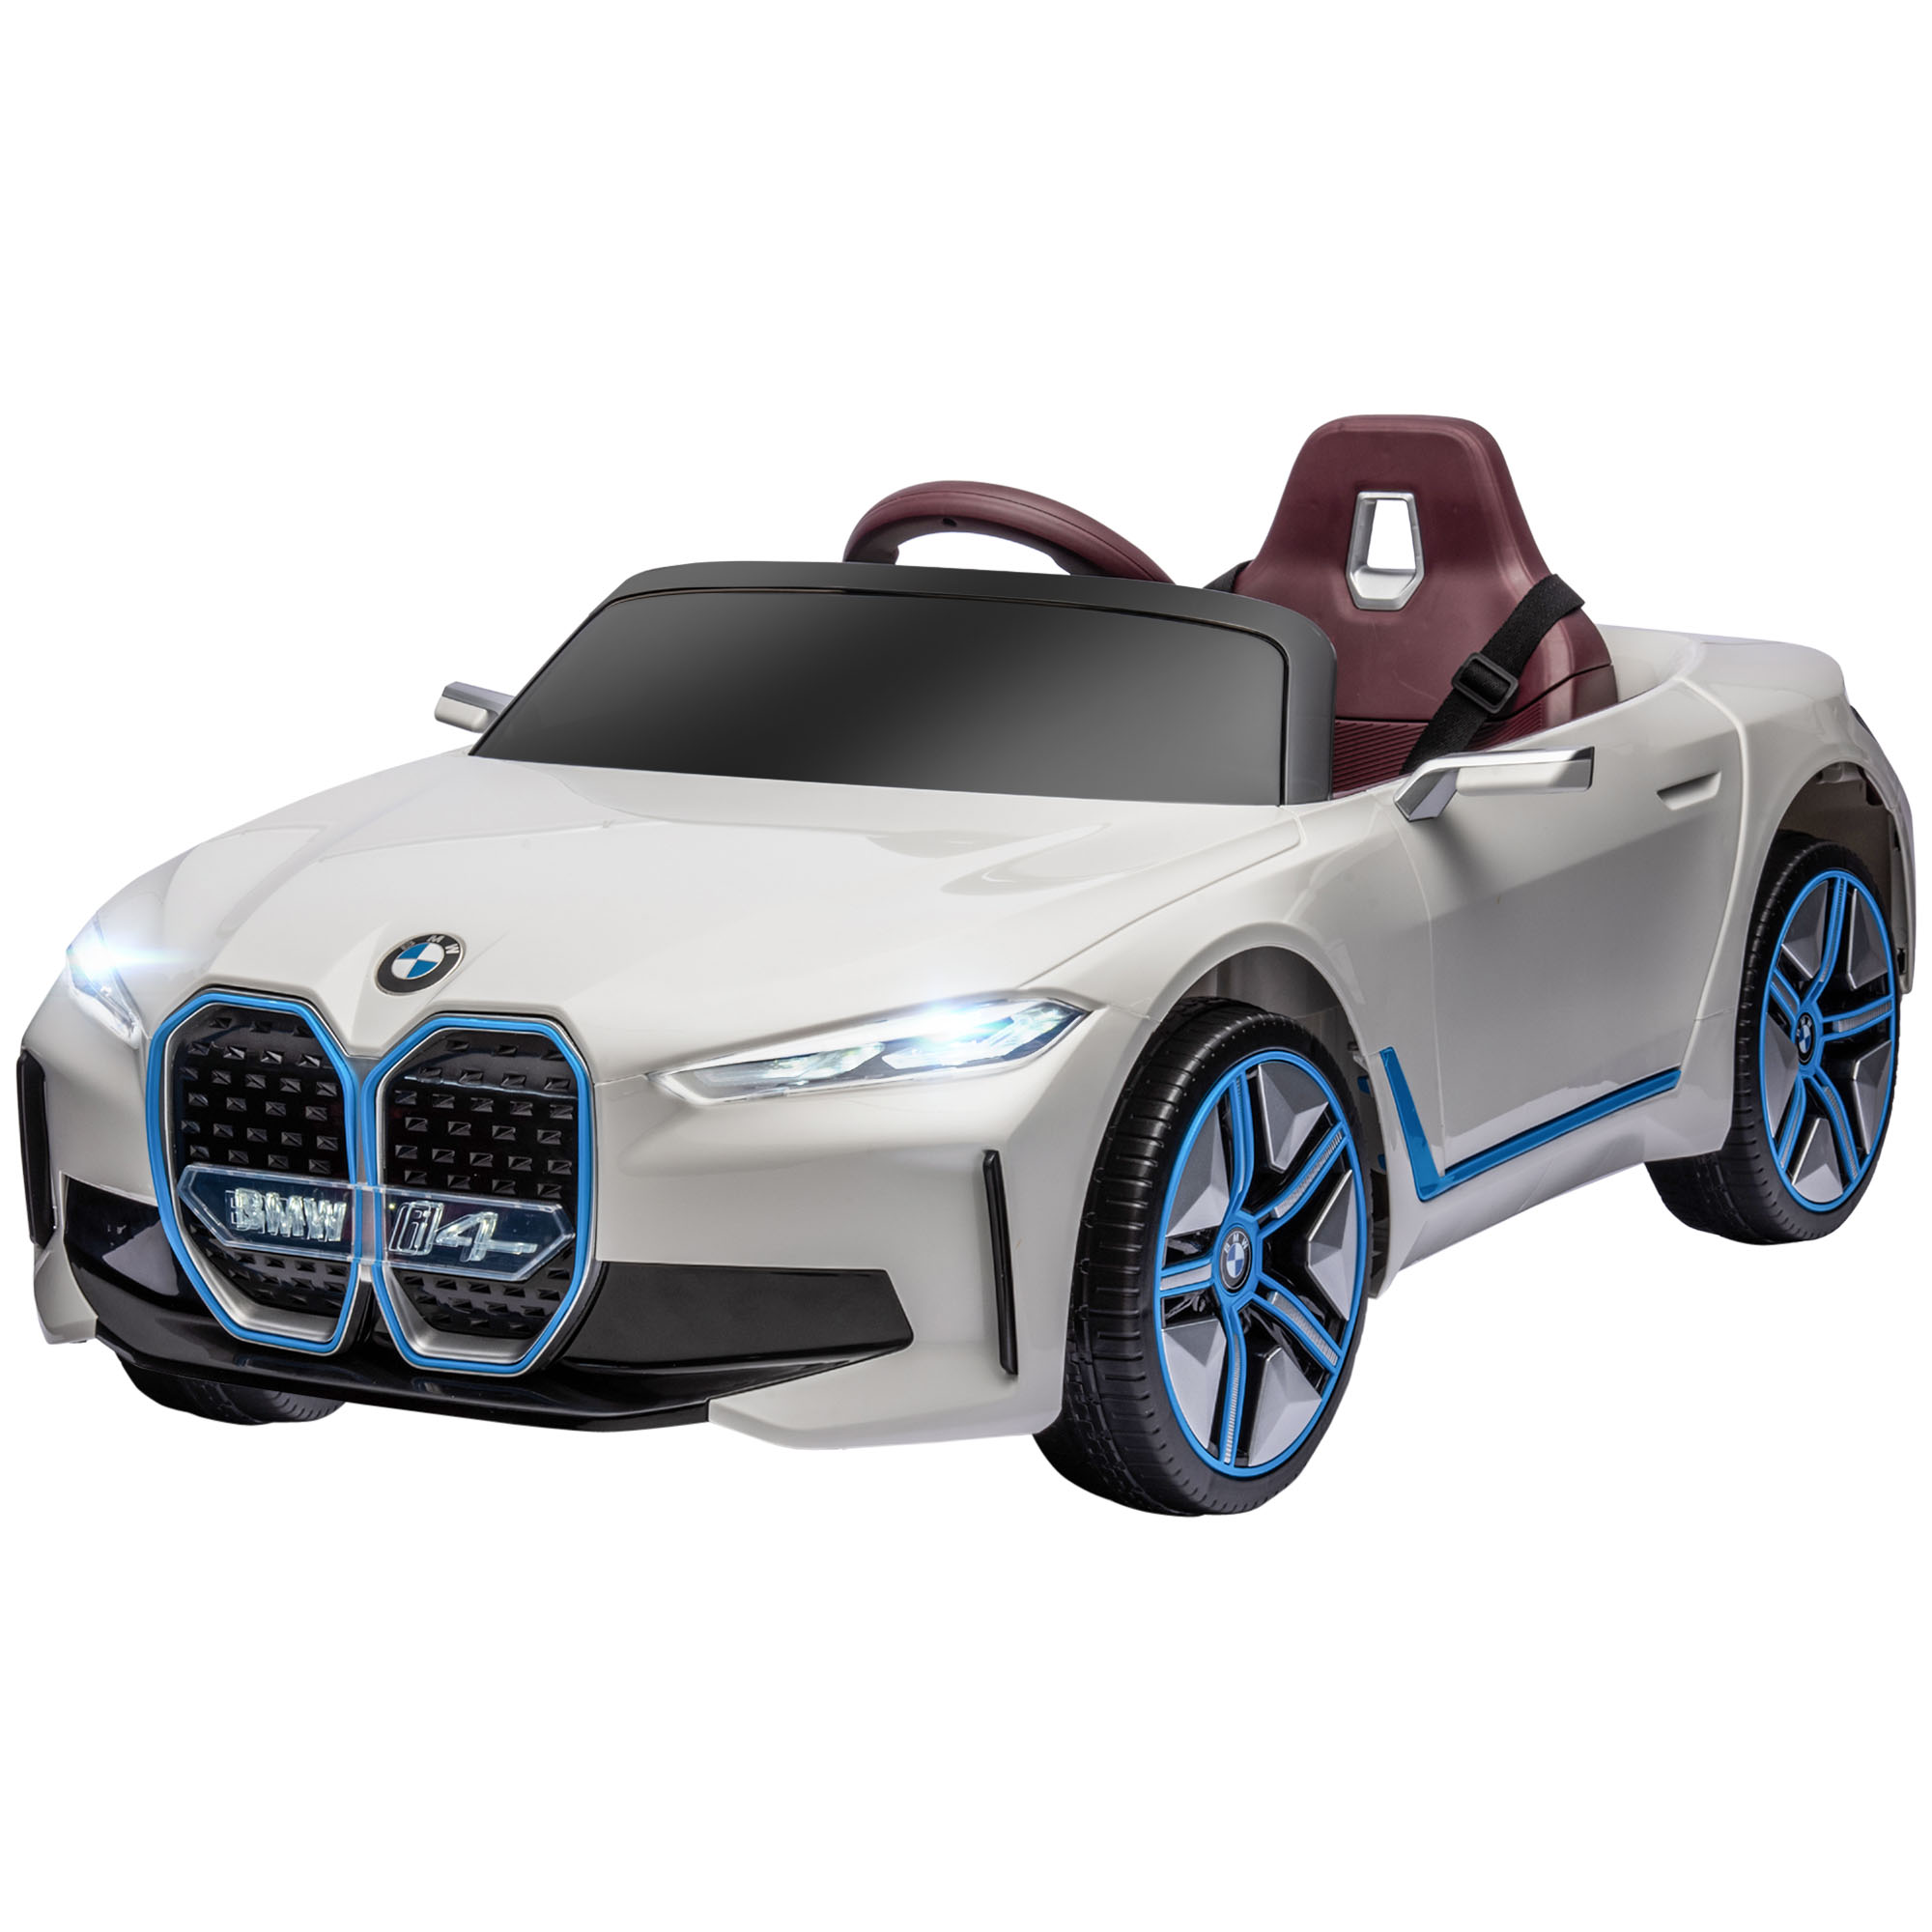 HOMCOM Electric Ride-On Toy Car για παιδιά 3-8 ετών με δίπλωμα BMW με Τηλεχειριστήριο